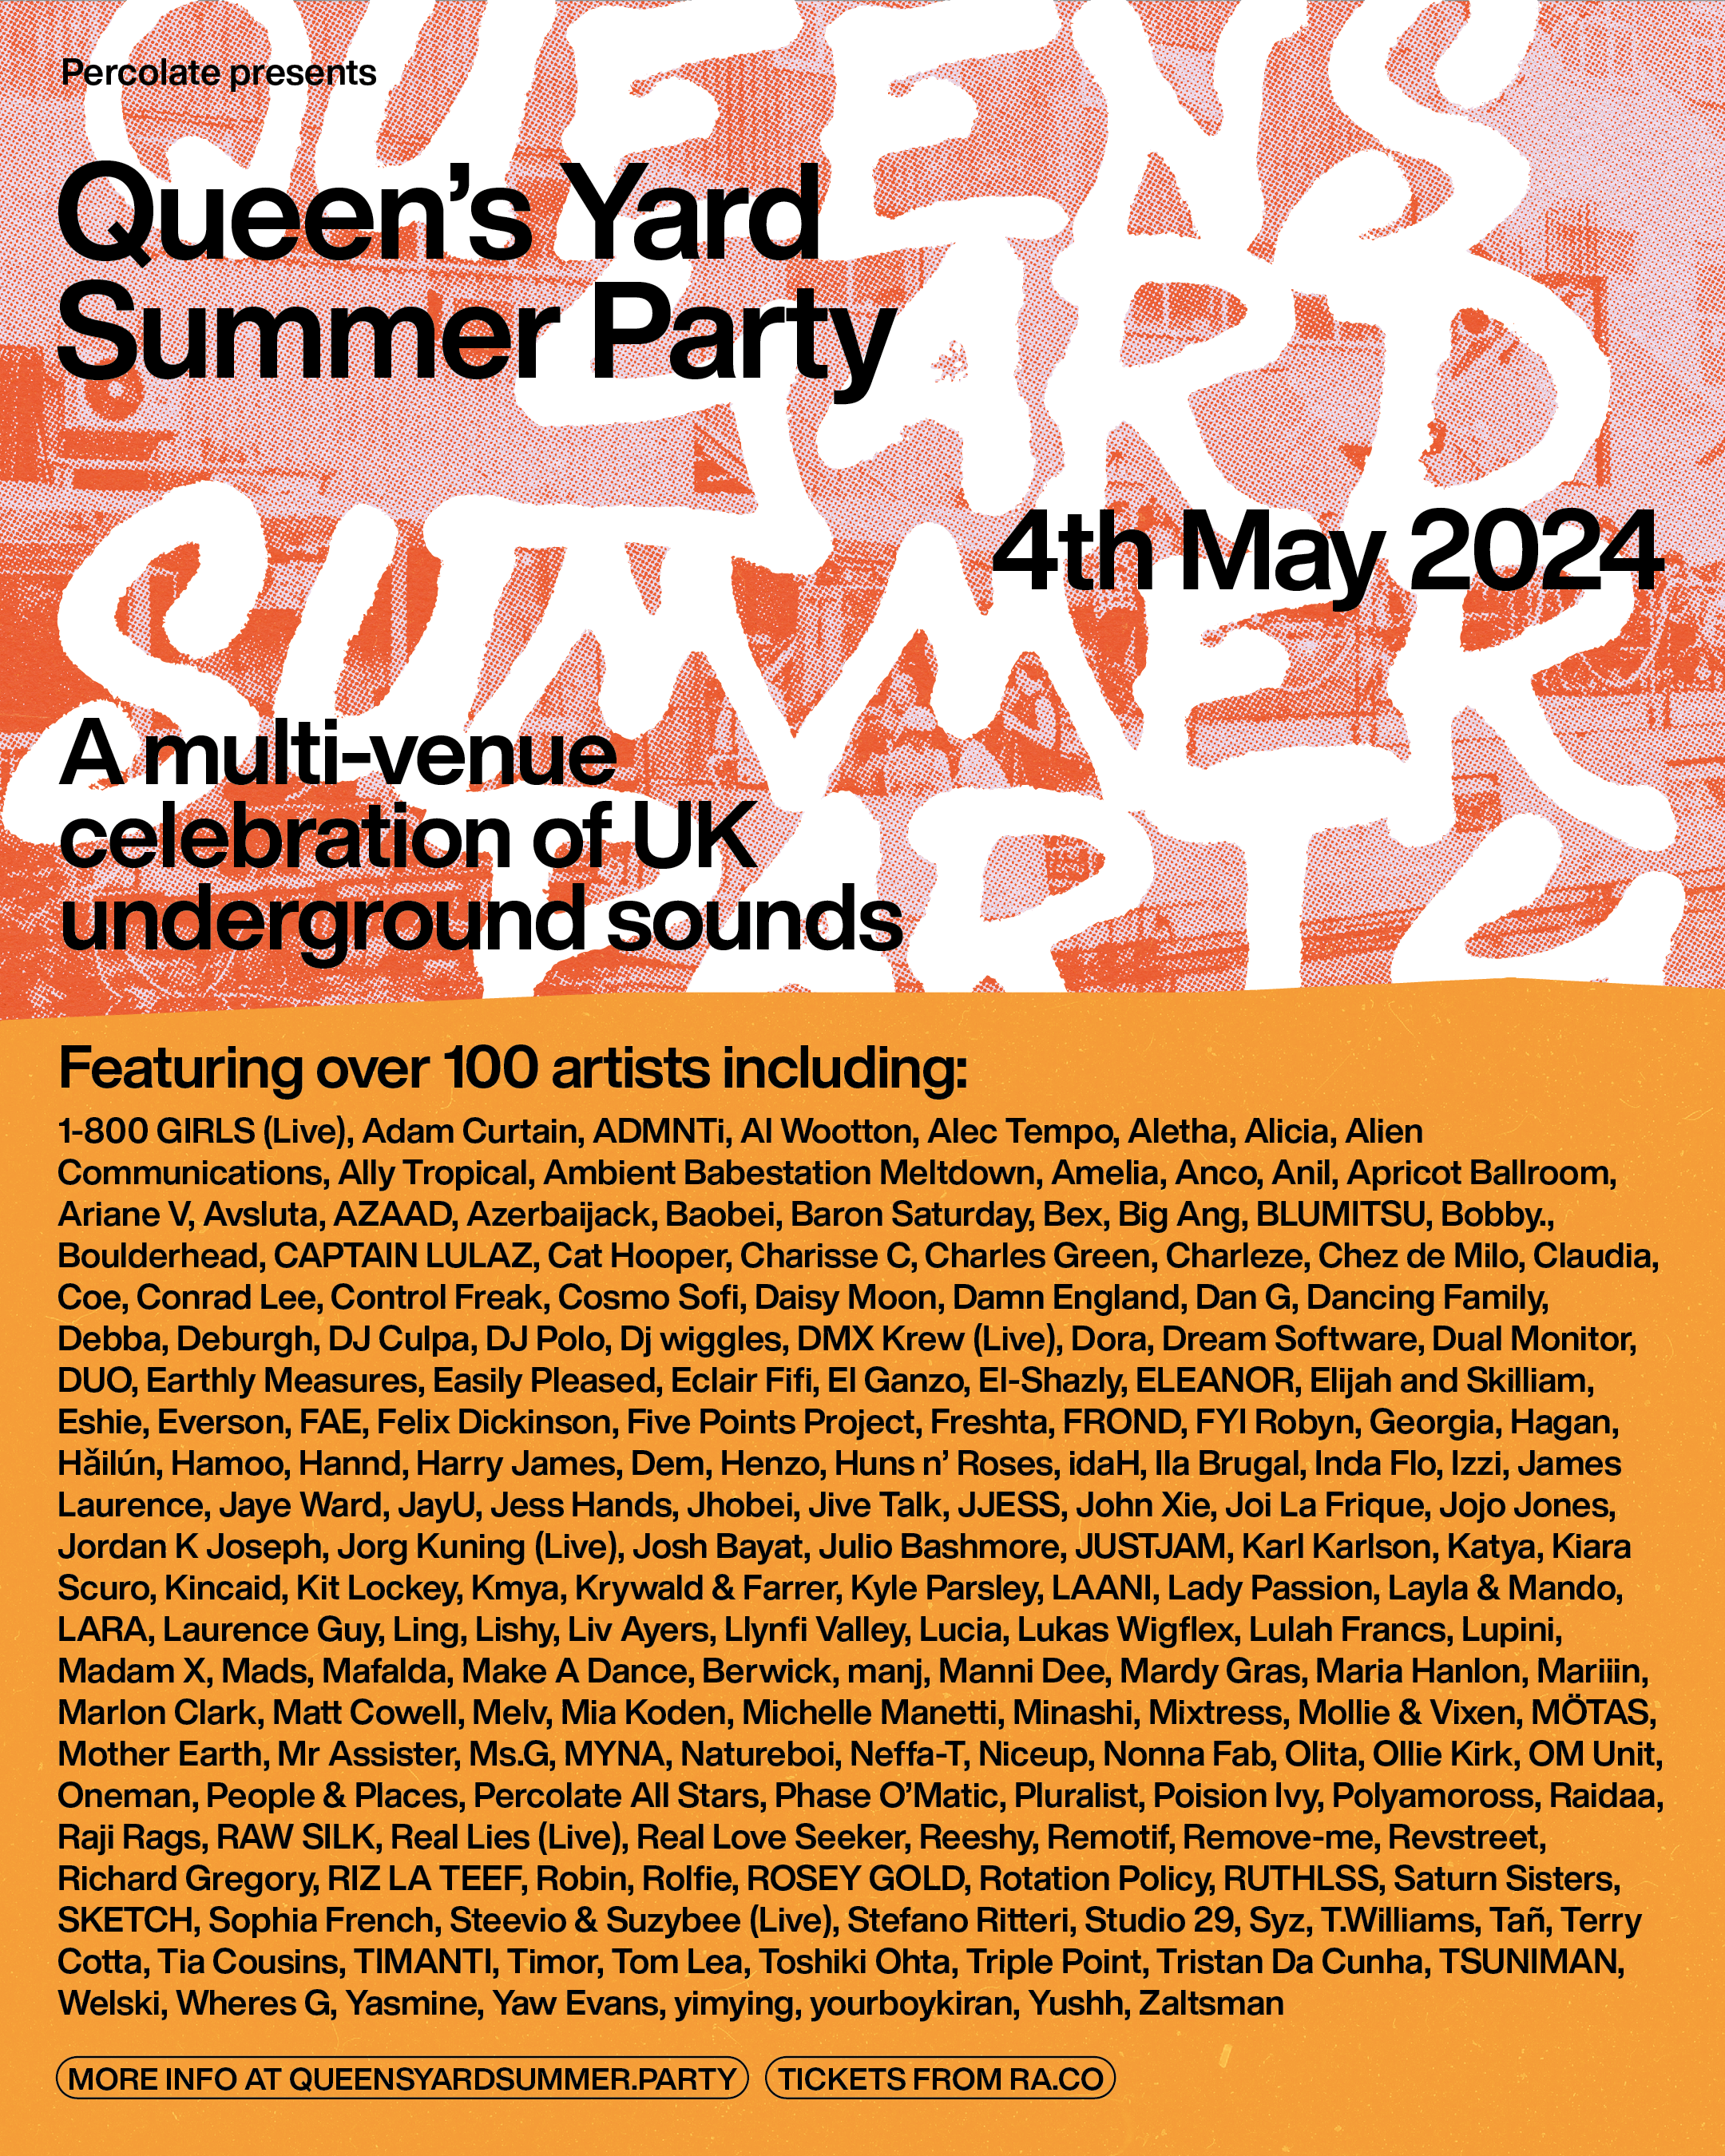 Queen's Yard Summer Party 2024 - Página frontal